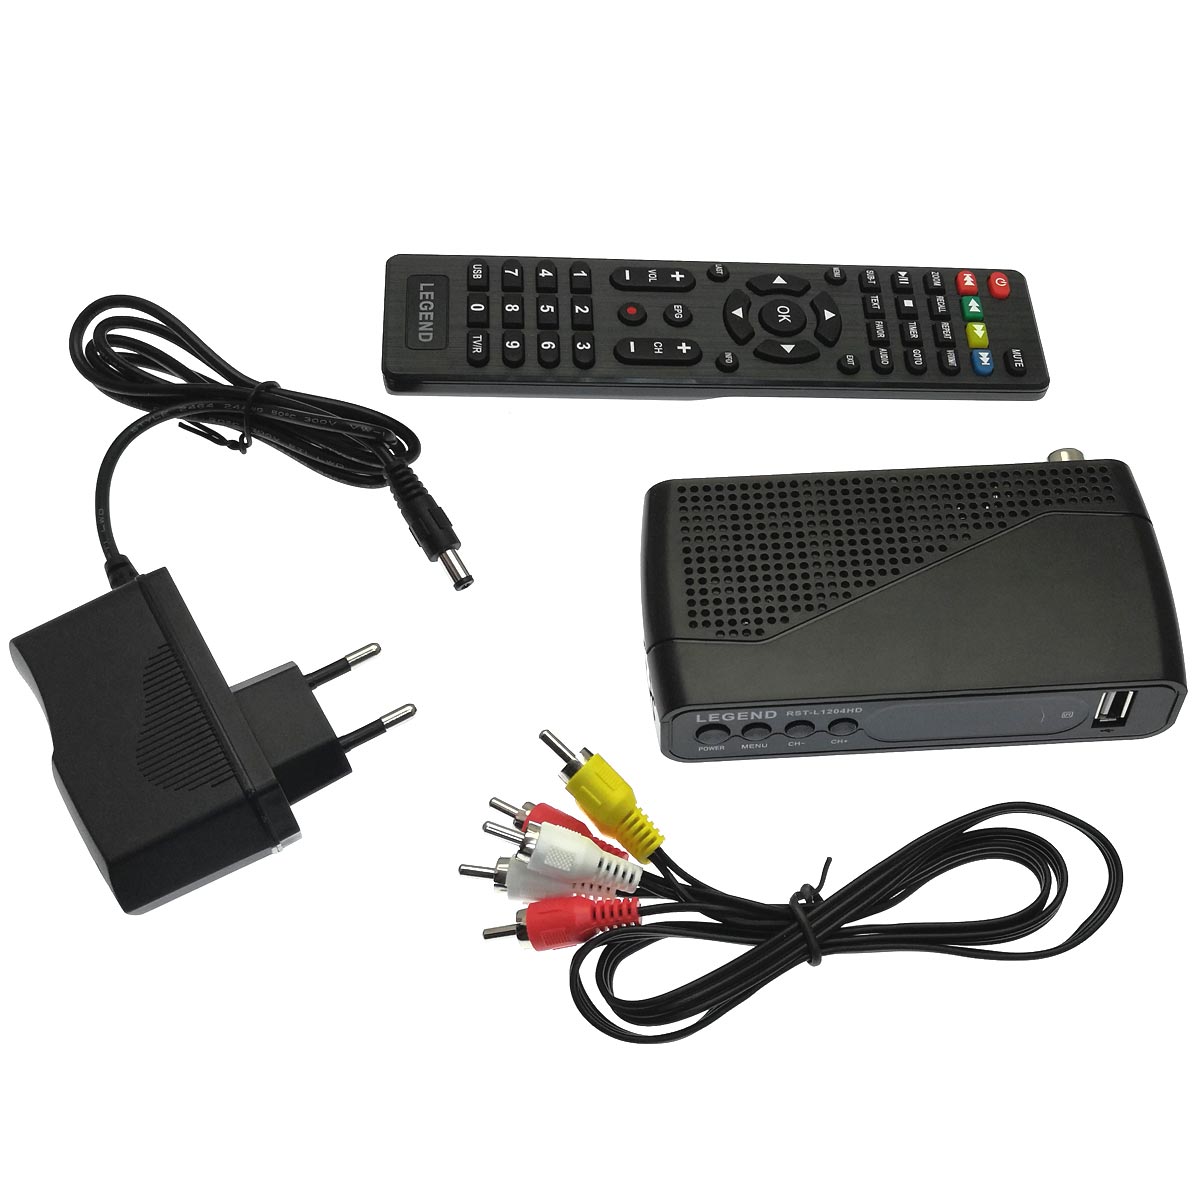 Цифровой эфирный приёмник, ТВ приставка DVB-T2 LEGEND RST-L1204HD, цвет черный